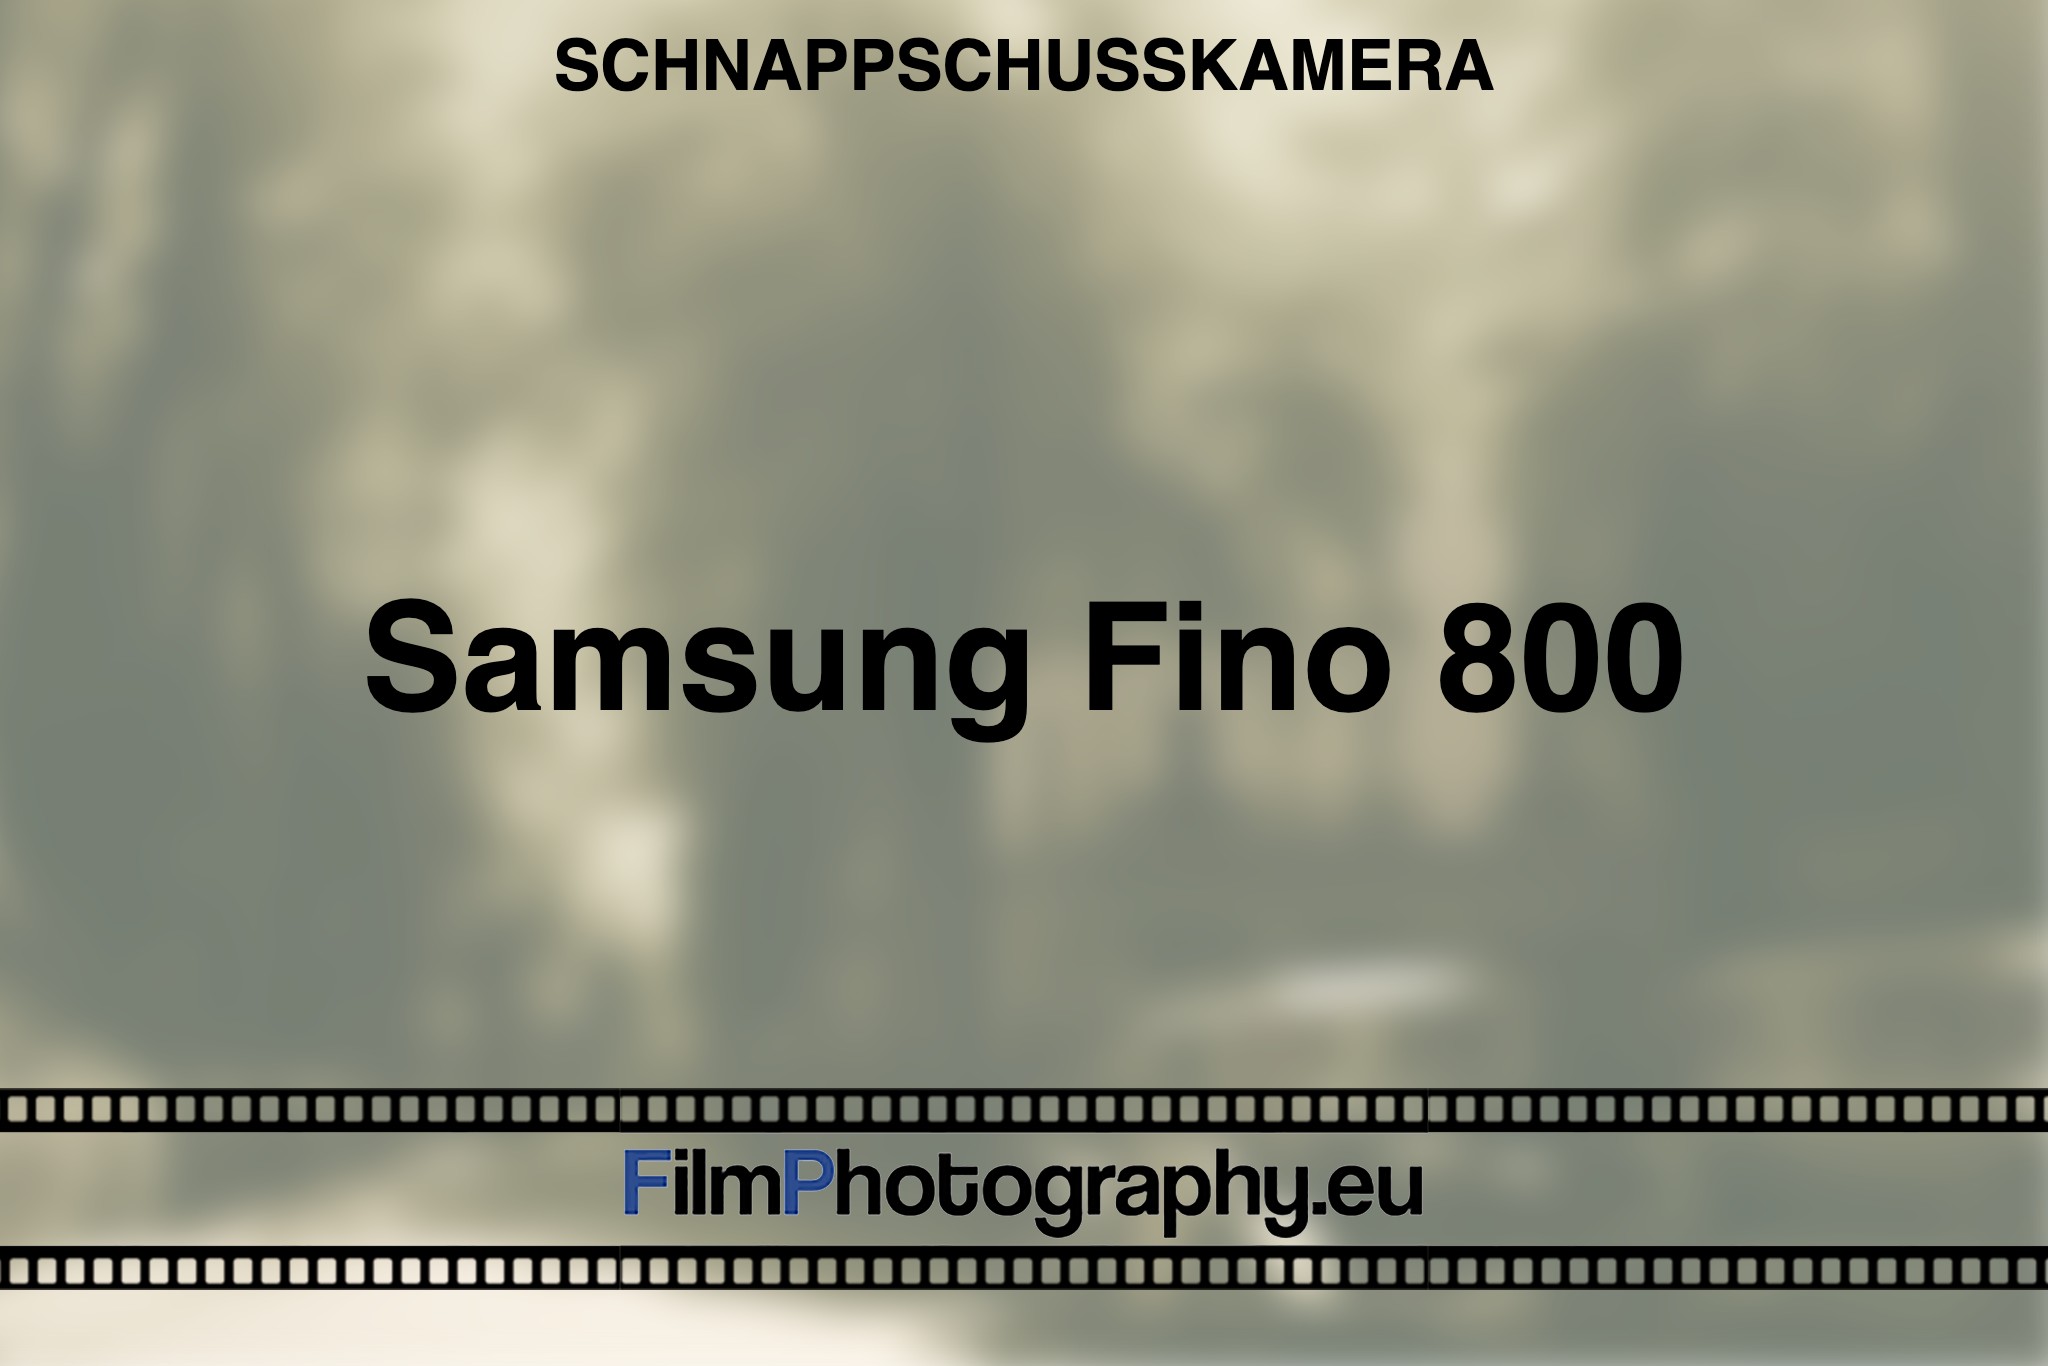 samsung-fino-800-schnappschusskamera-bnv